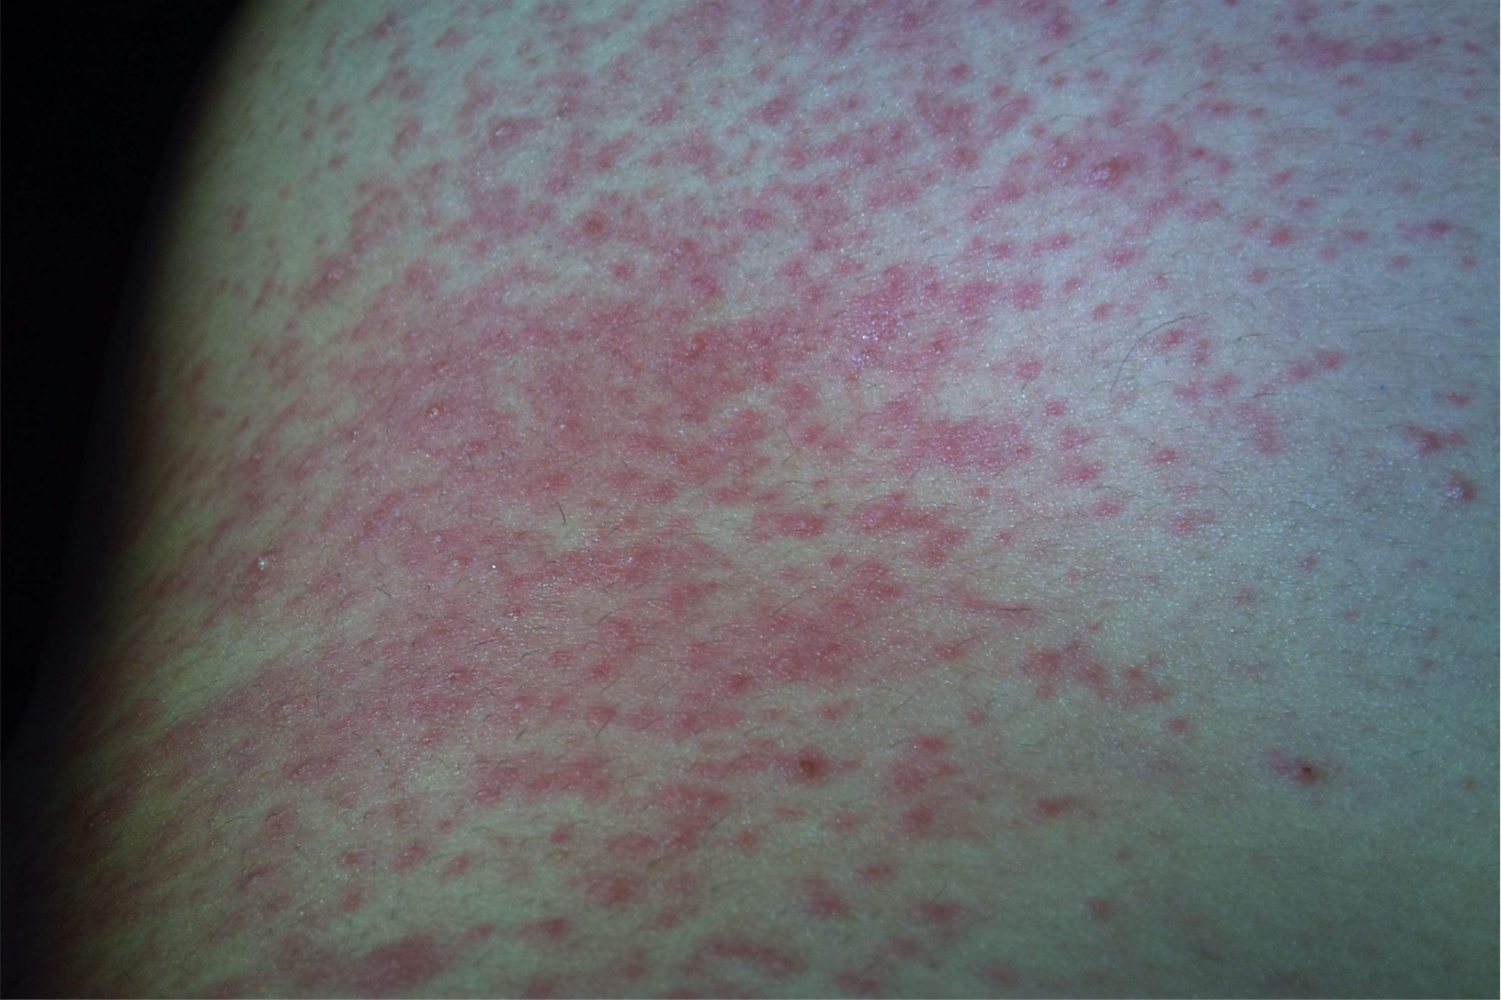 亚急性湿疹症状图片图片